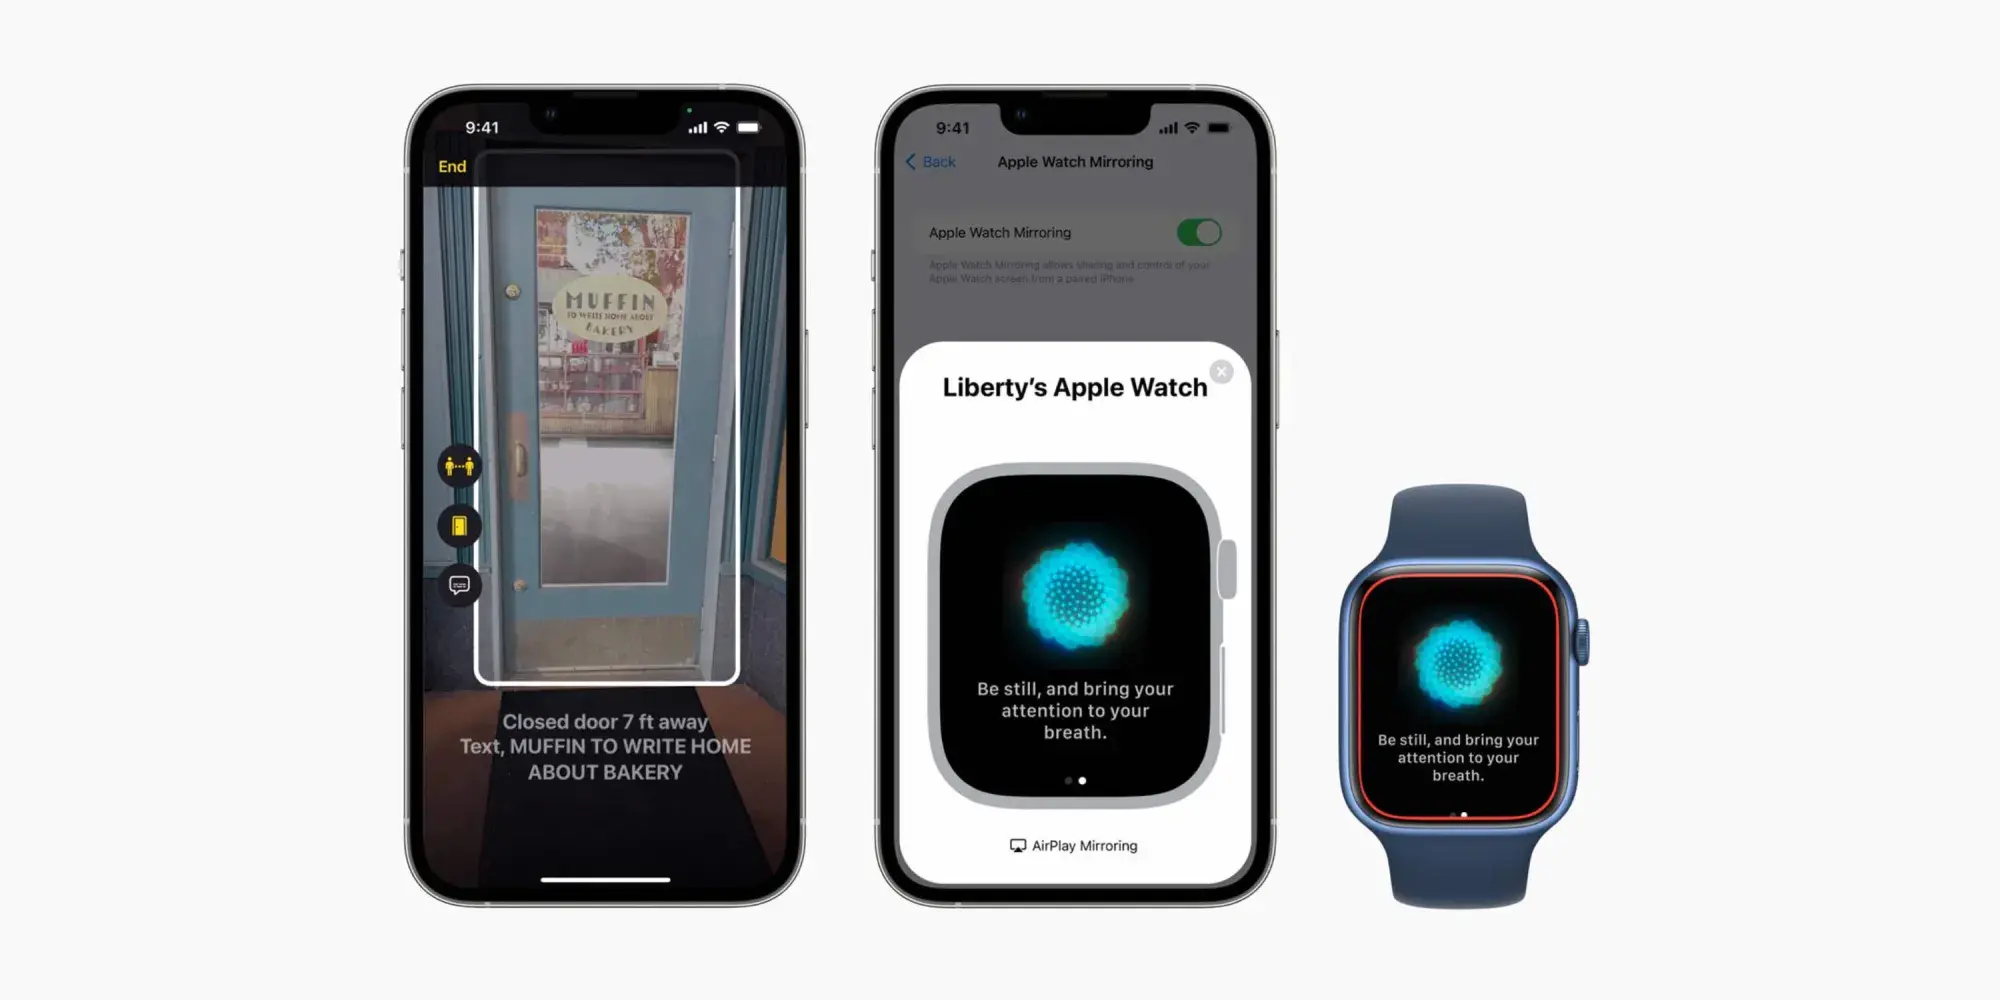 Aquí se presentan la detección de puertos y Apple Watch Mirroring: Apple anuncia nuevas funciones de accesibilidad: detección de puertos, Apple Watch Mirroring, subtítulos en tiempo real